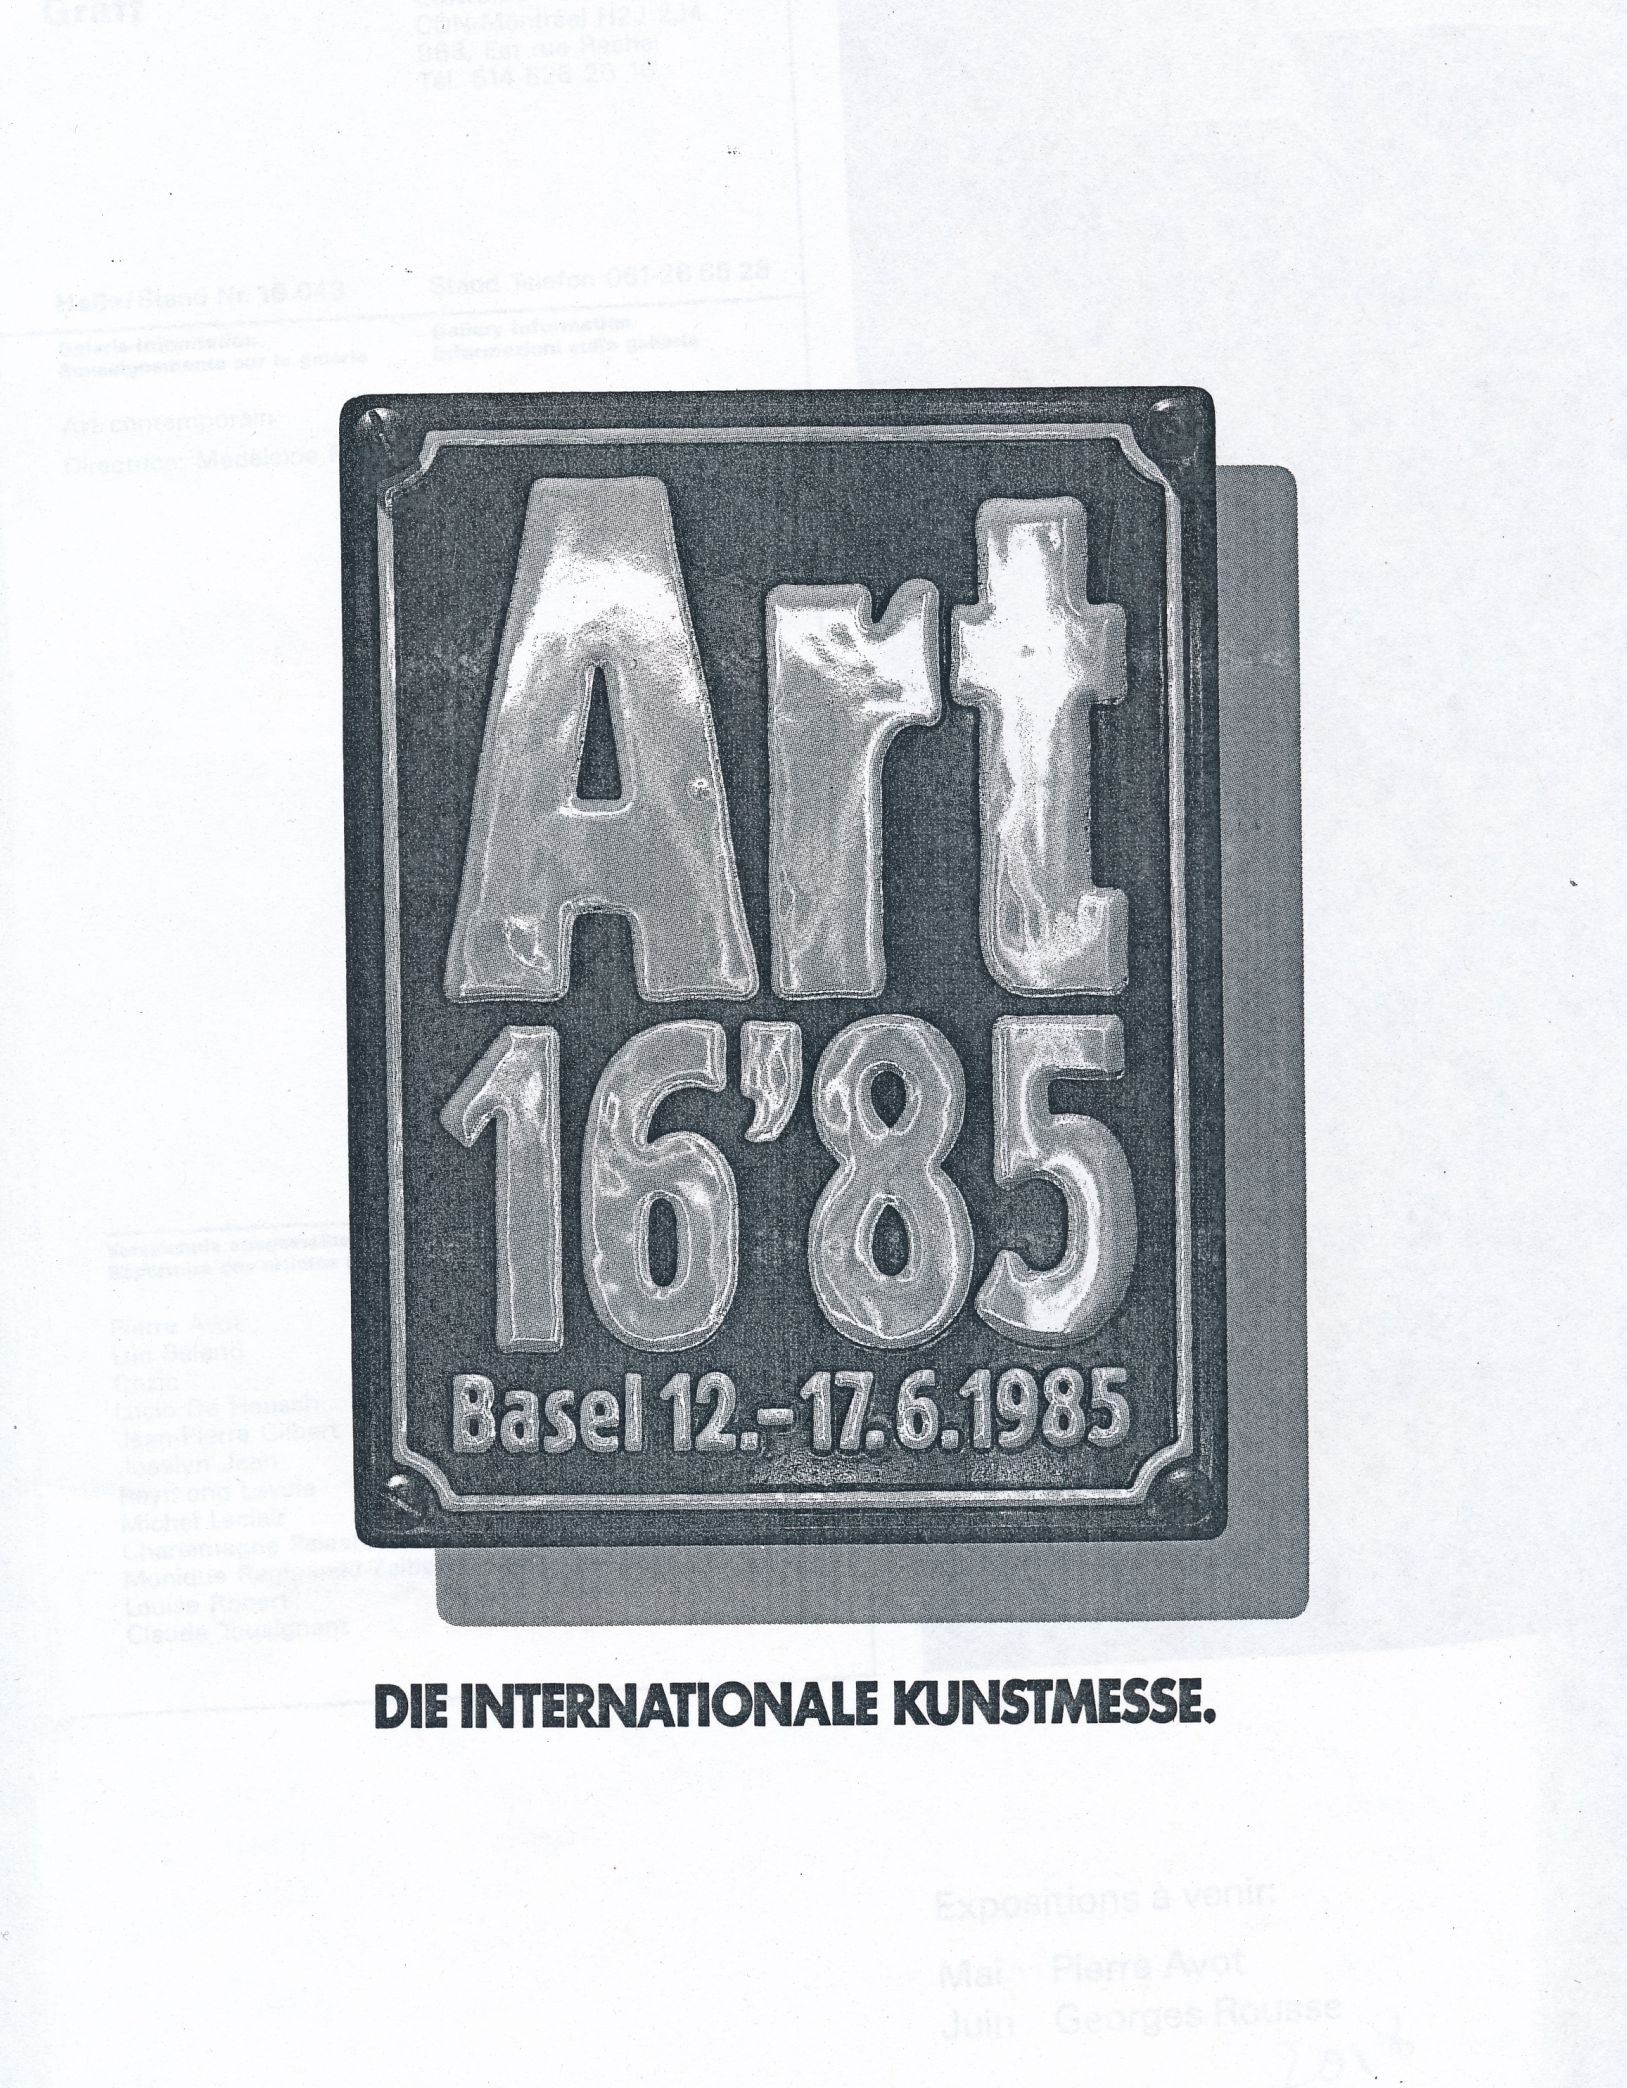 Couverture du catalogue d’exposition Art 16’85 Basel 12.-17.6.1985. Die Internationale Kunstmesse, 1985.